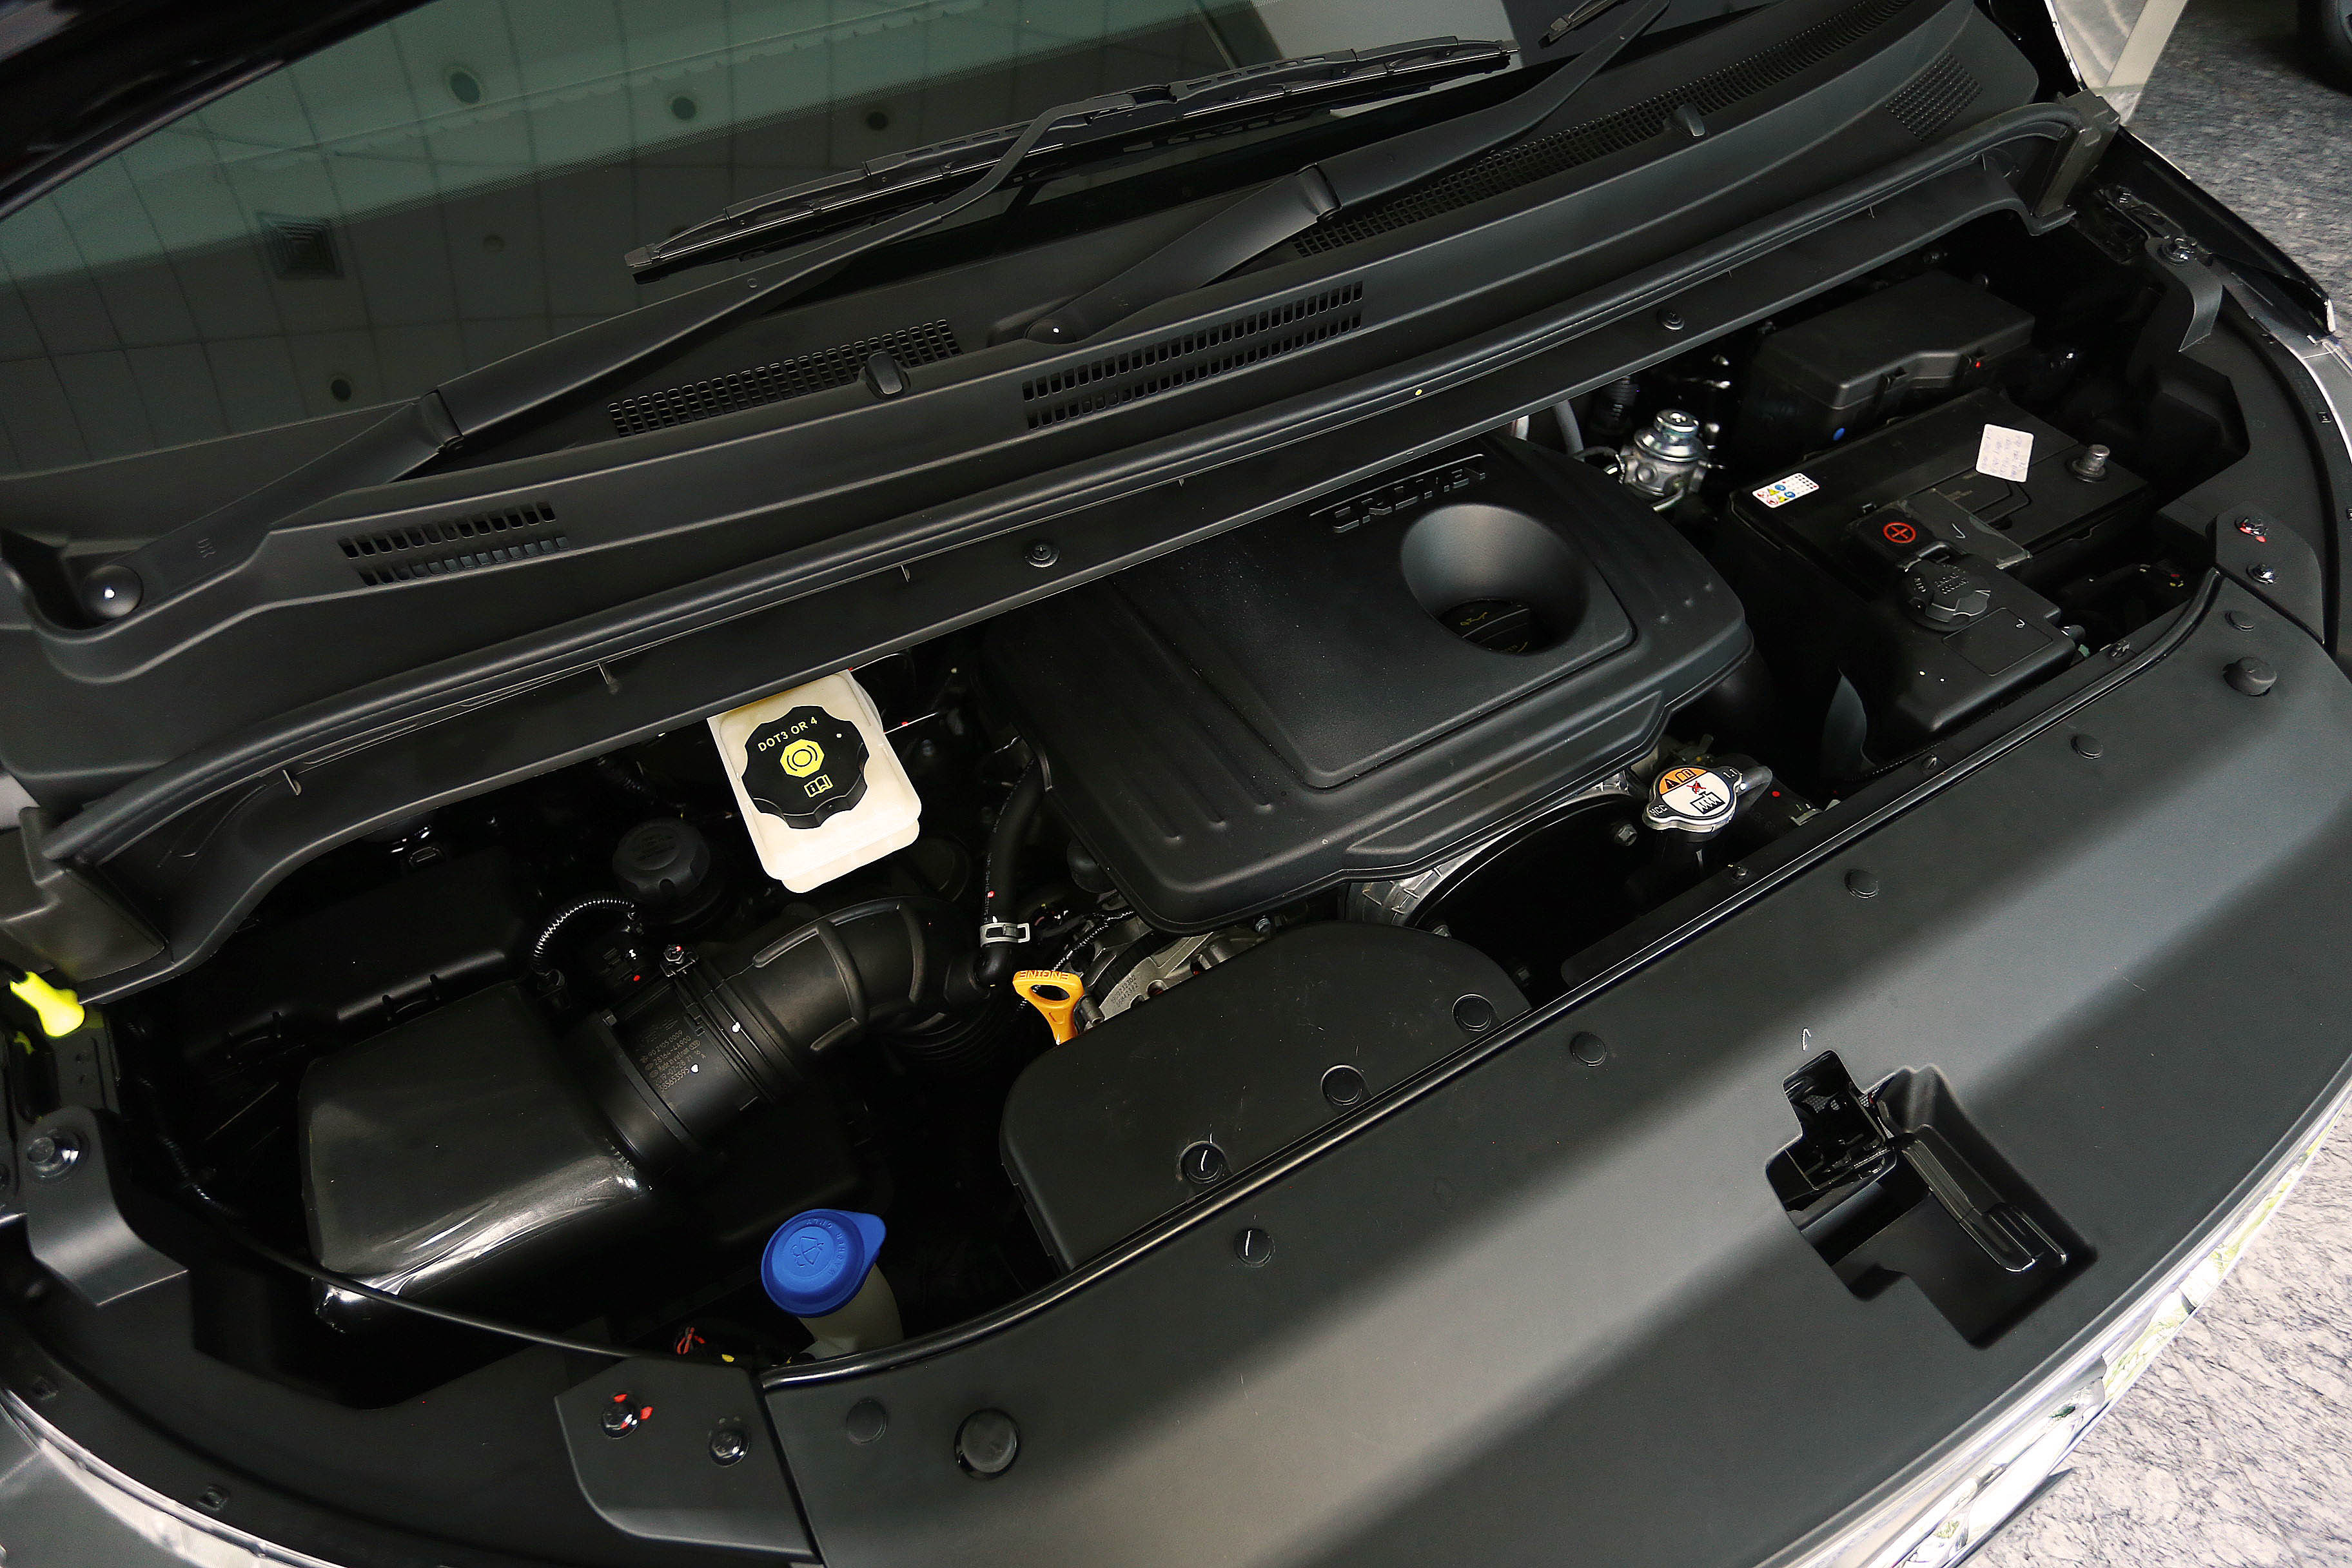 Servis Mobil Hyundai Secara Rutin Di Bengkel Resmi Guna Cegah Diesel Runaway